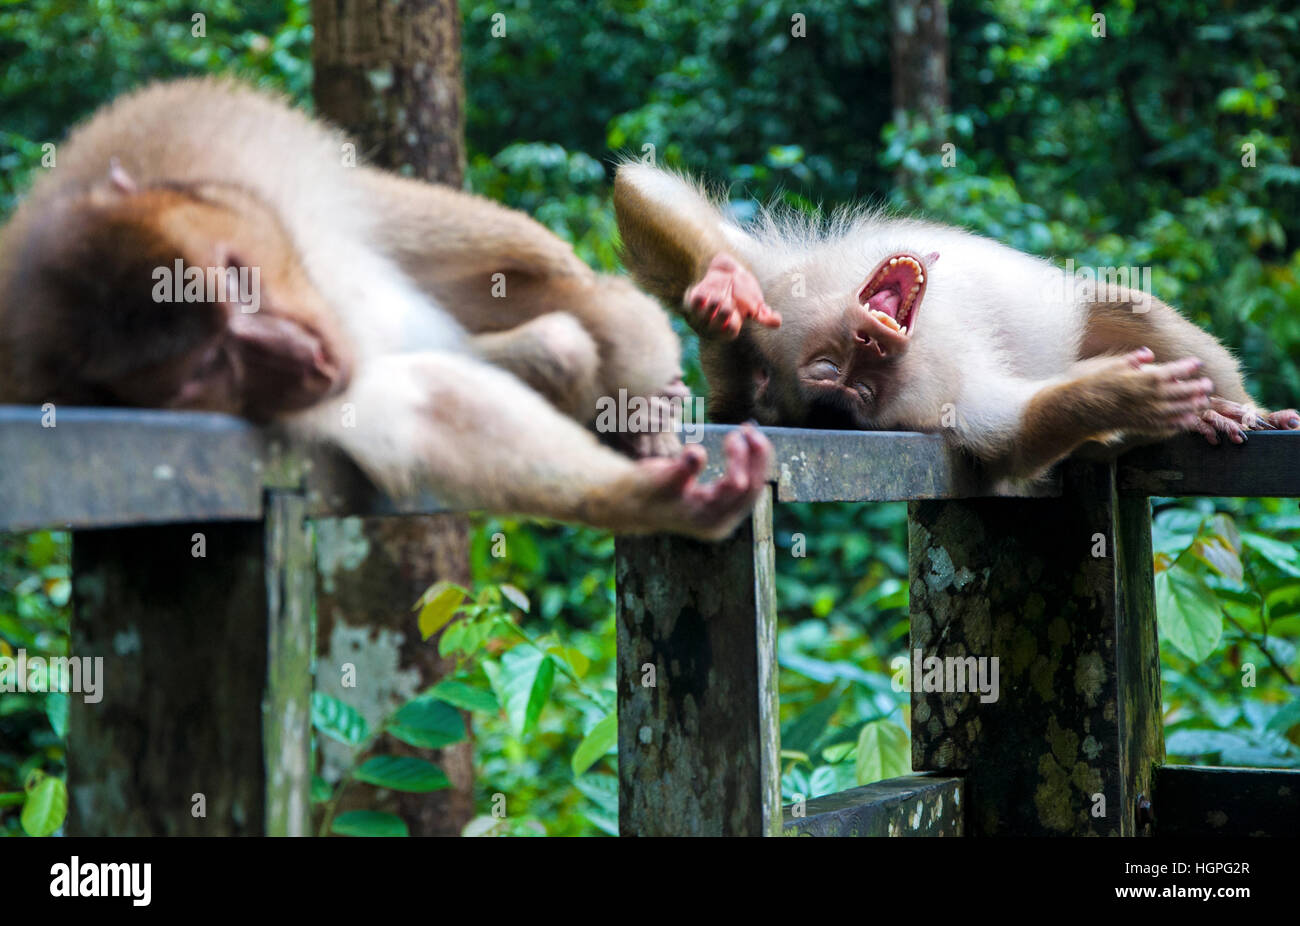 Rire monkey portant sur son dos, Bornéo Malaisie Banque D'Images